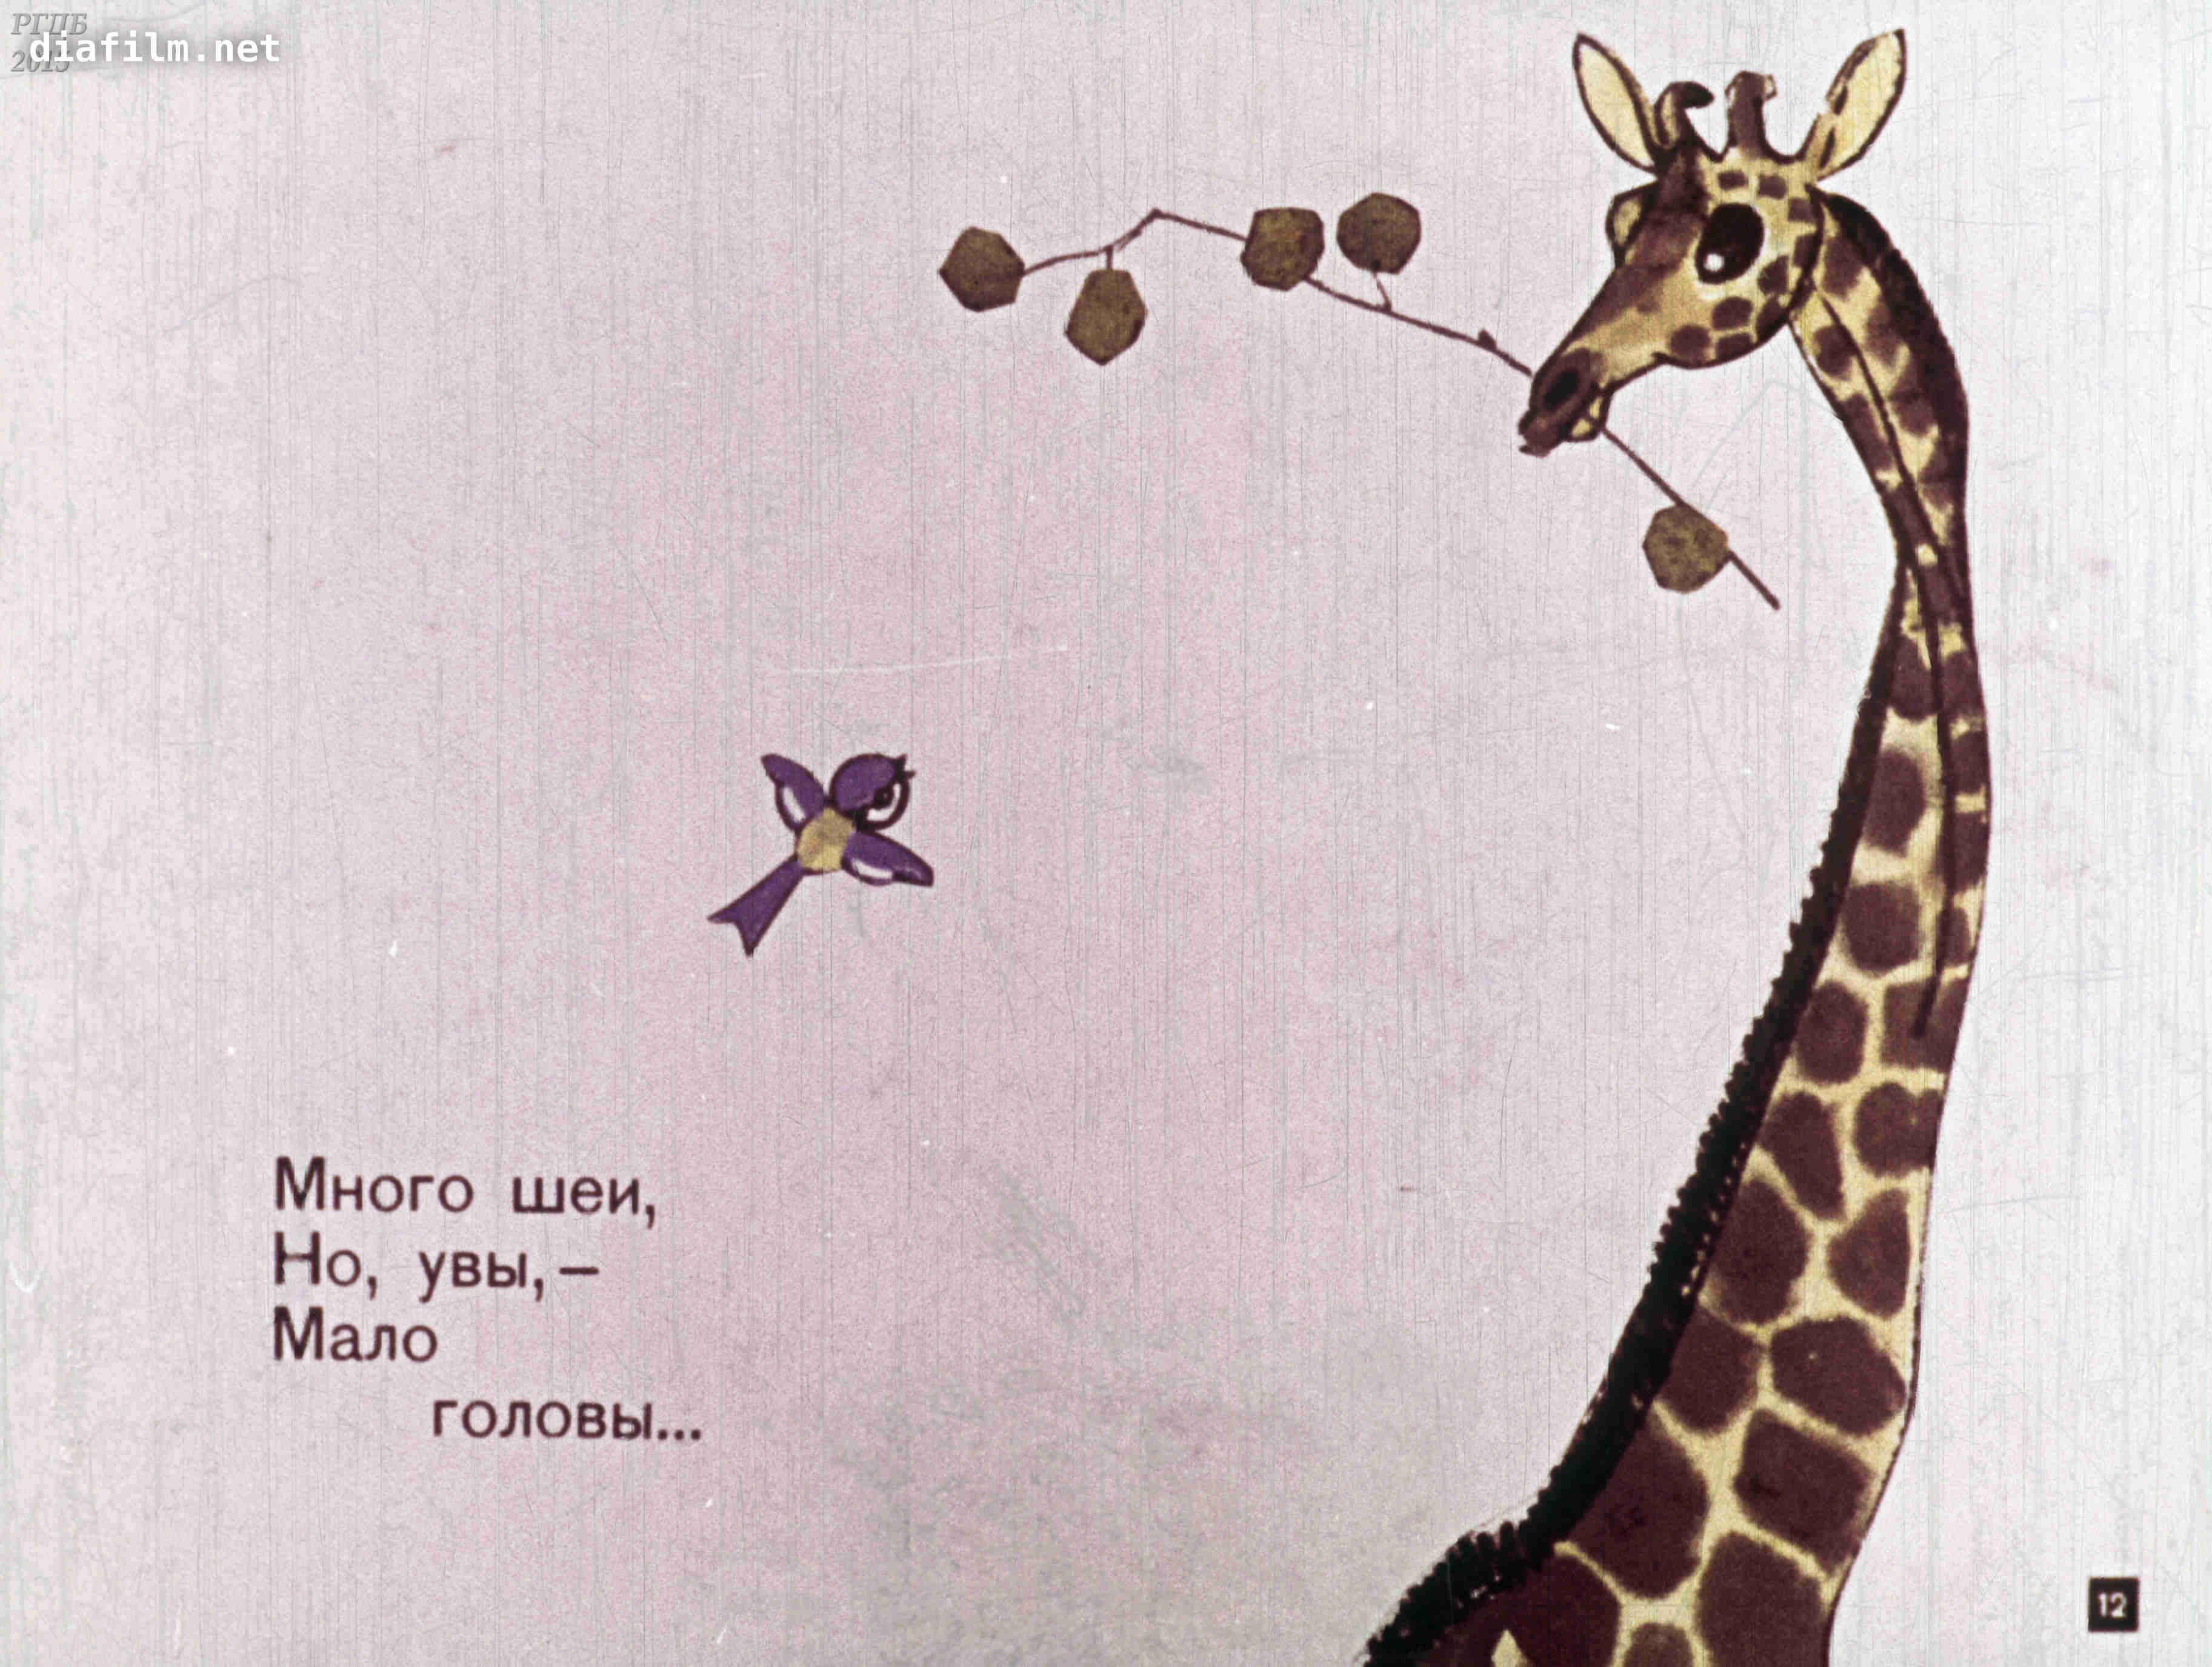 Иллюстрация к жирафу Гумилева. Рисунок к стиху Жираф. Иллюстрация к стихотворению Жираф. Рисунок по стихотворению Жираф. Мысль стихотворения жираф